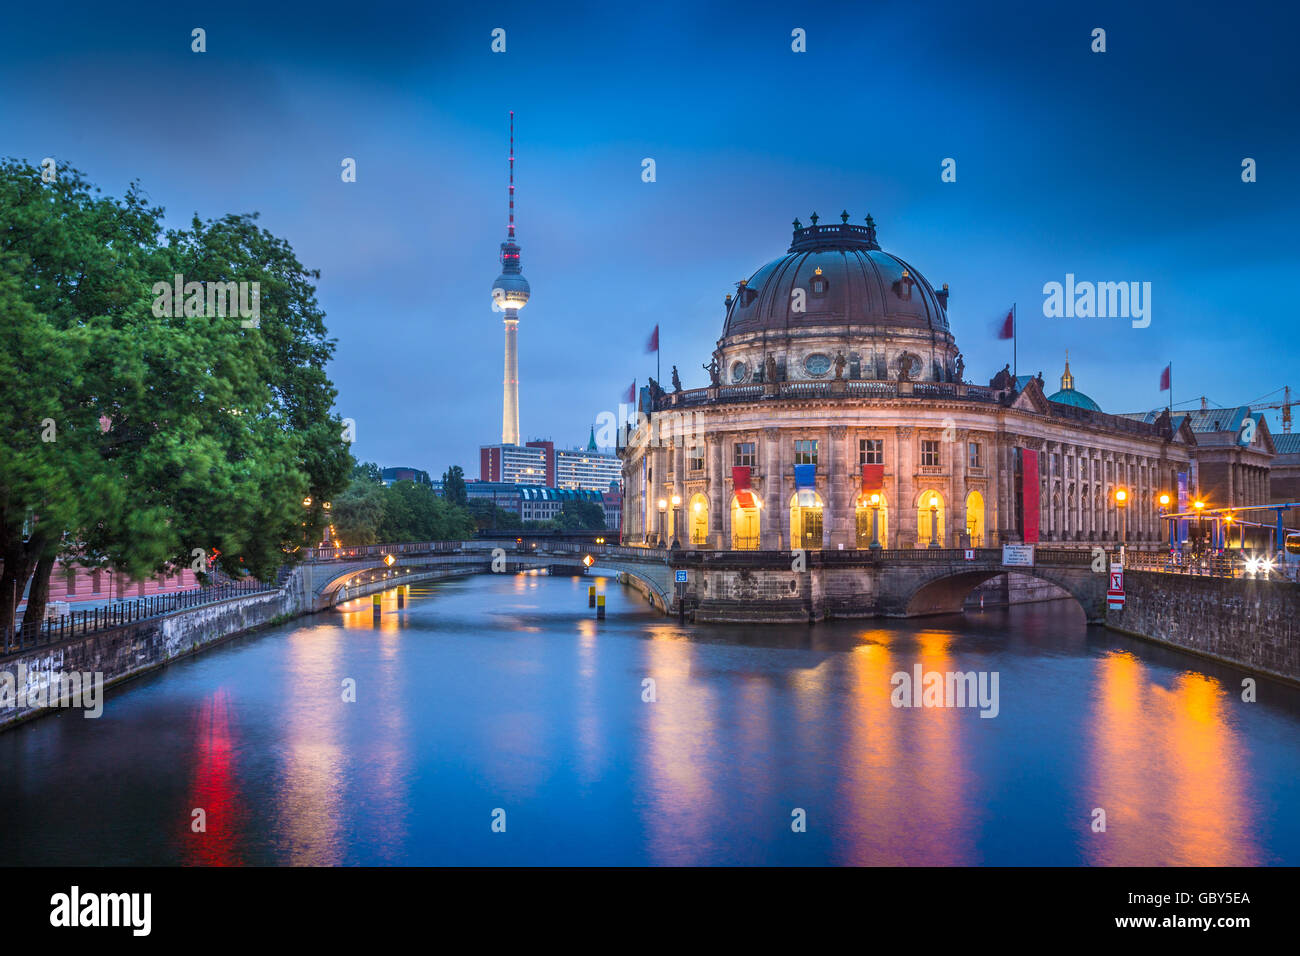 Belle vue de la ville historique de Berlin Museumsinsel avec célèbre tour de la télévision et de la rivière Spree dans twilight pendant heure bleue au crépuscule, Berlin Banque D'Images